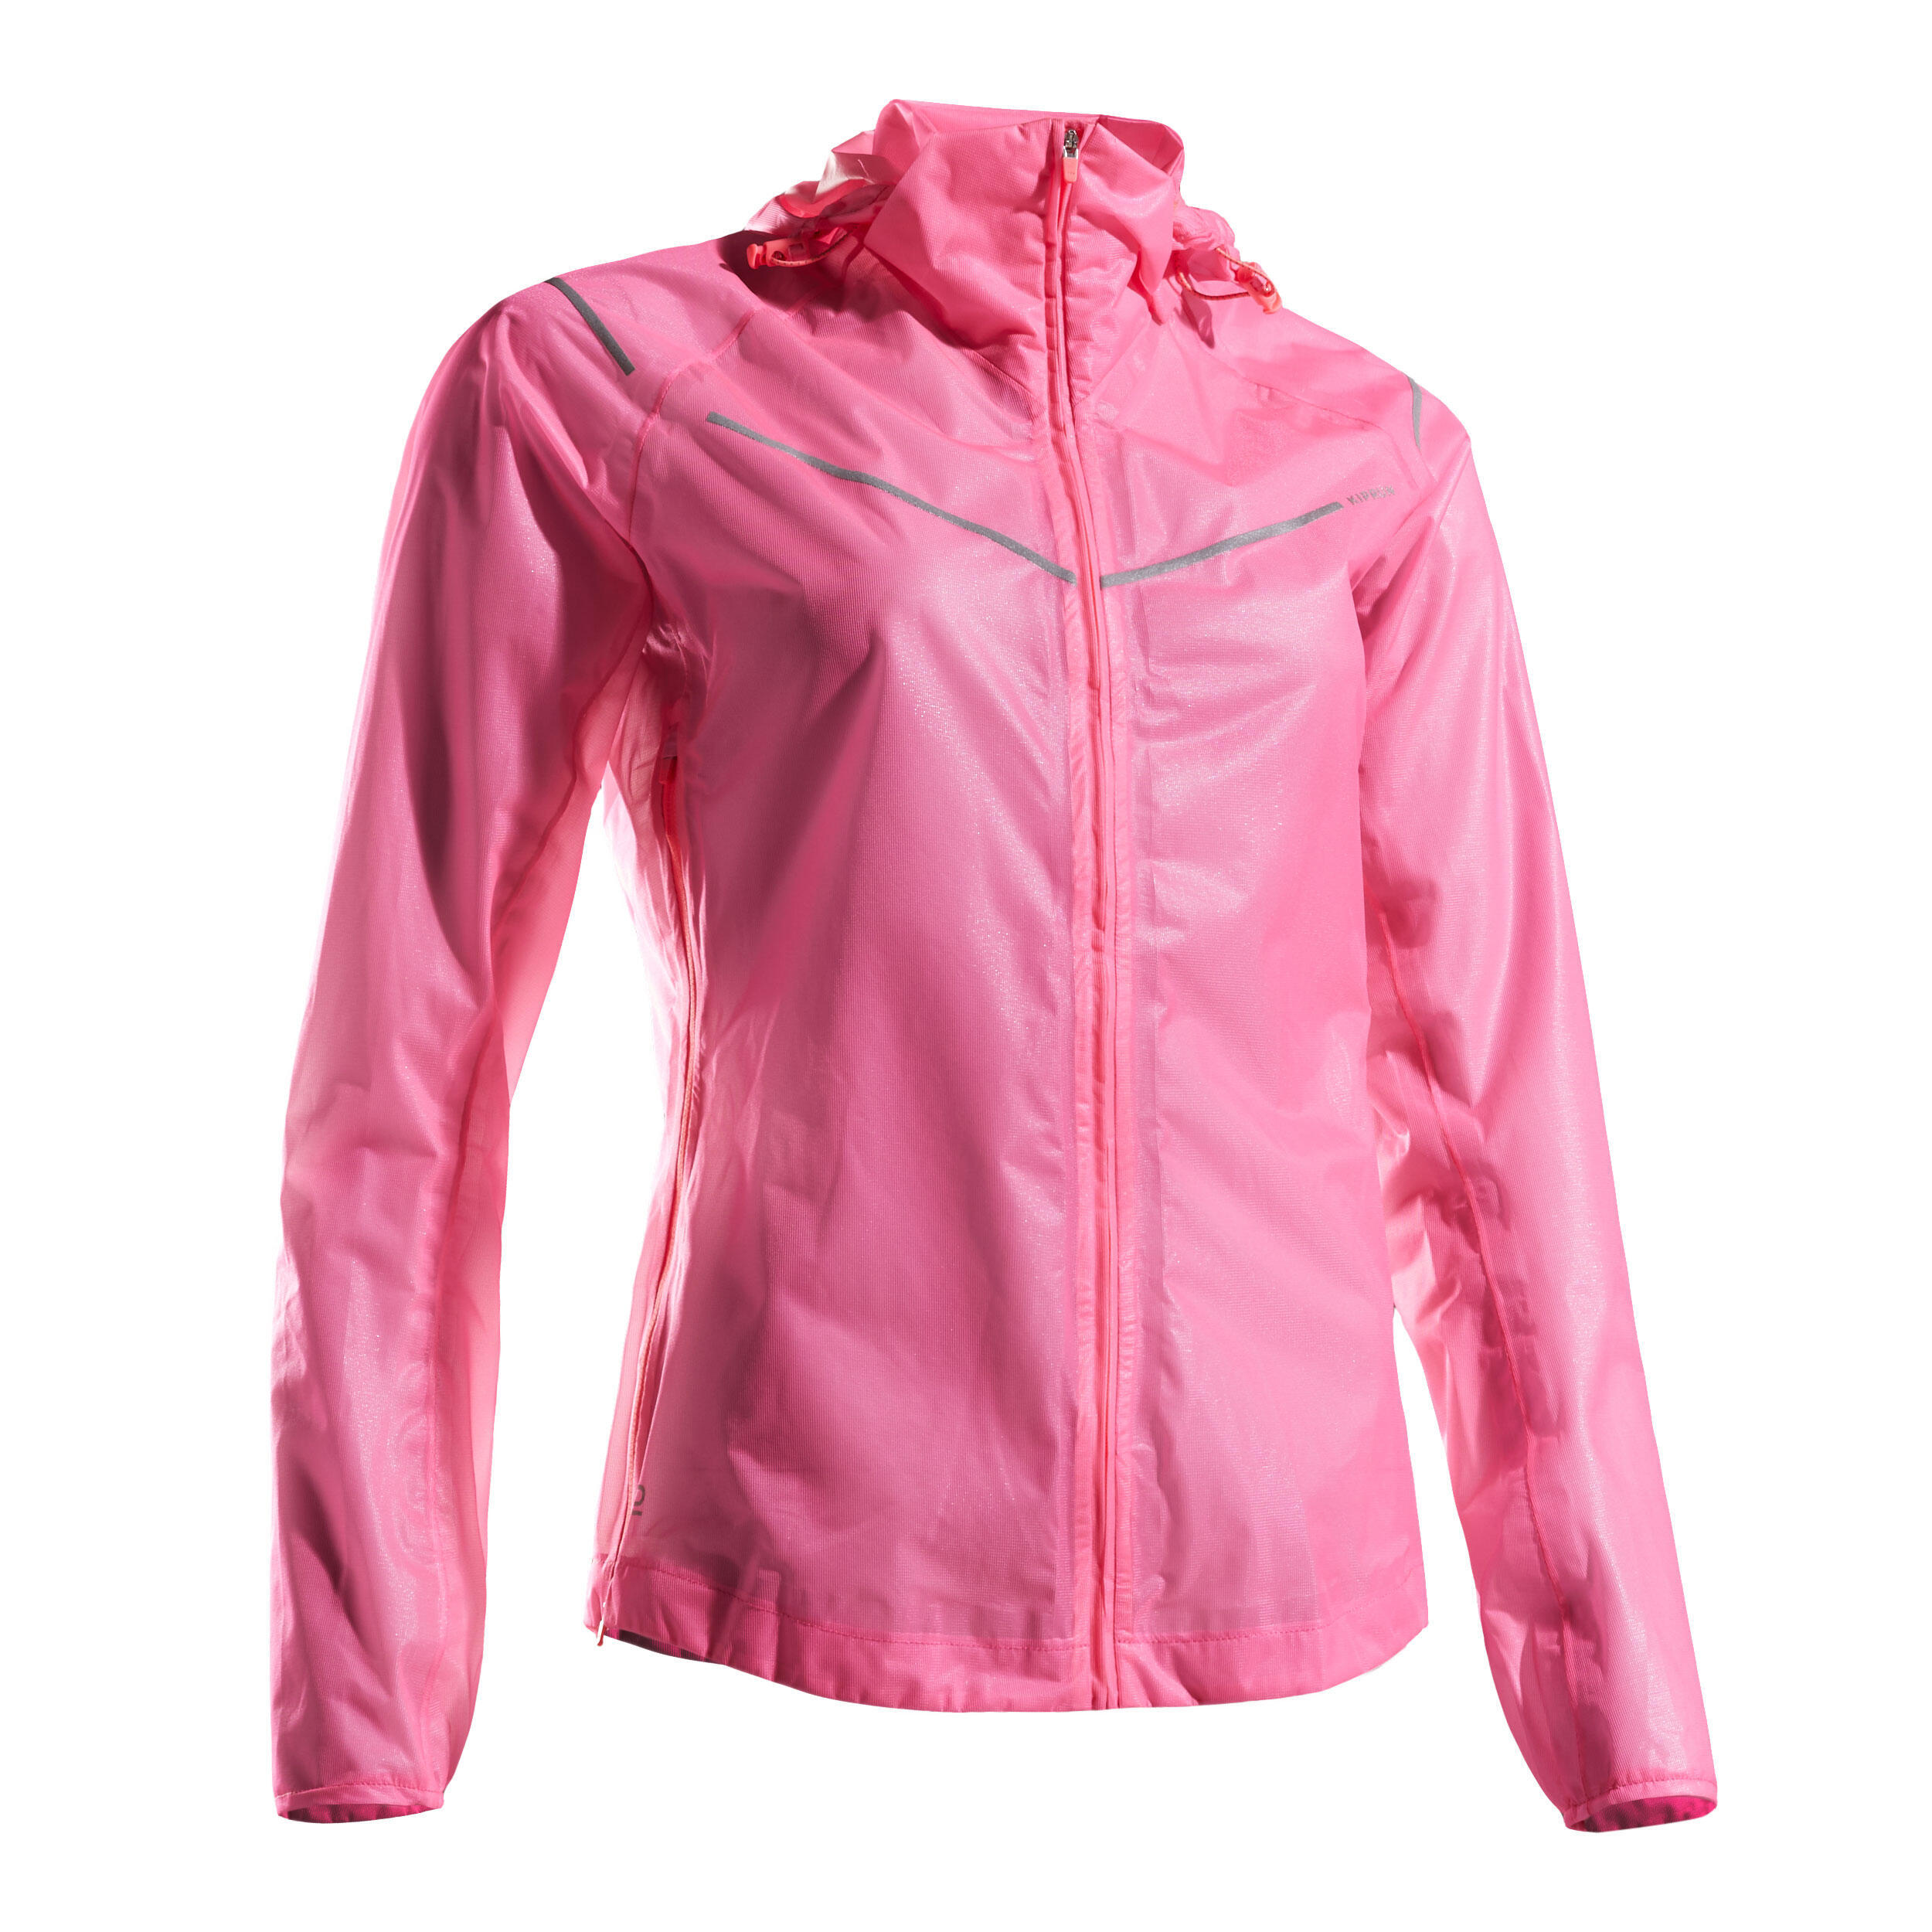 Kiprun Light Women's Running Showerproof Jacket - Pink 9/9